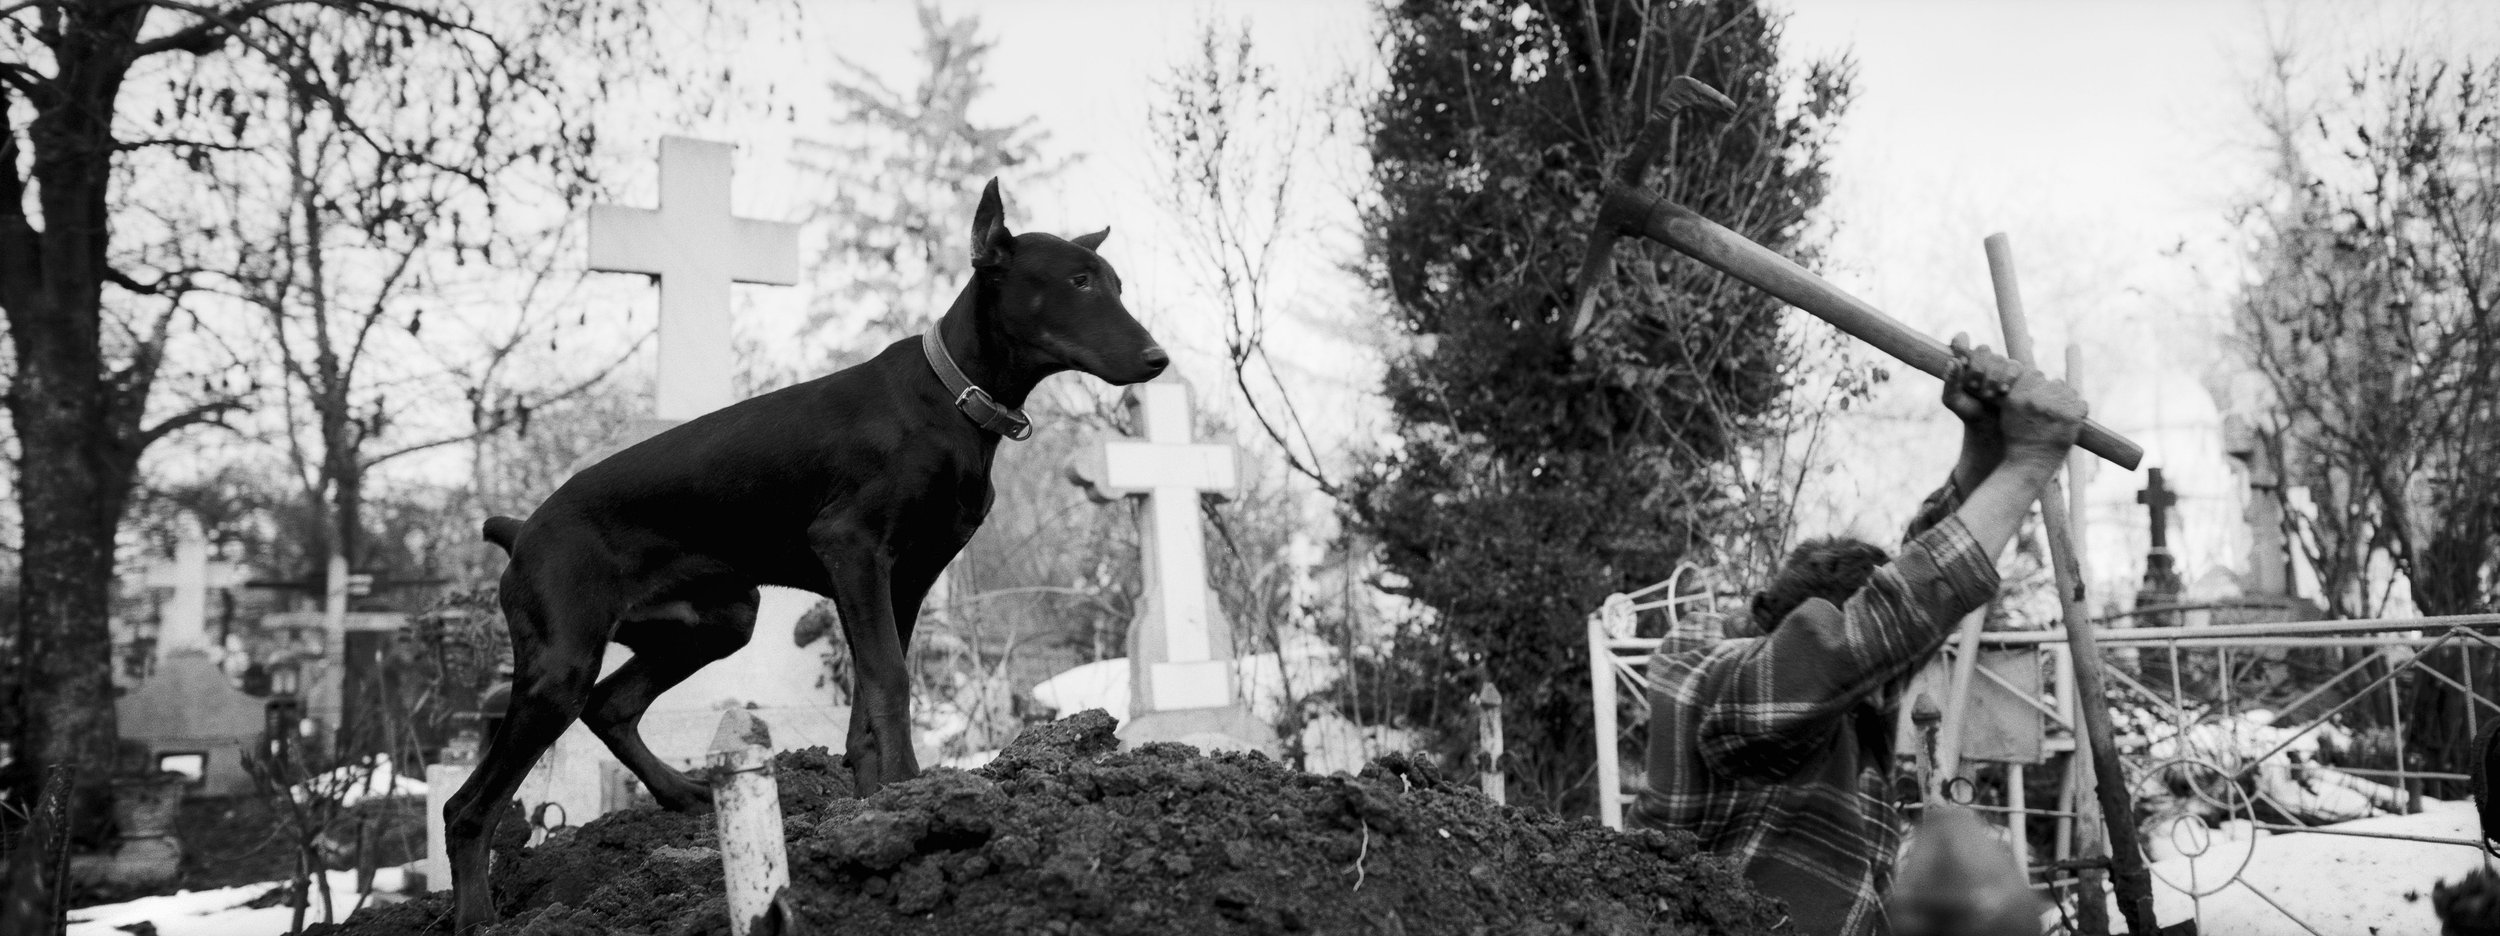 ©Stephen Dupont - Bucharest Wild Dogs 2001 - 0103 A031 #13A_Book.jpg